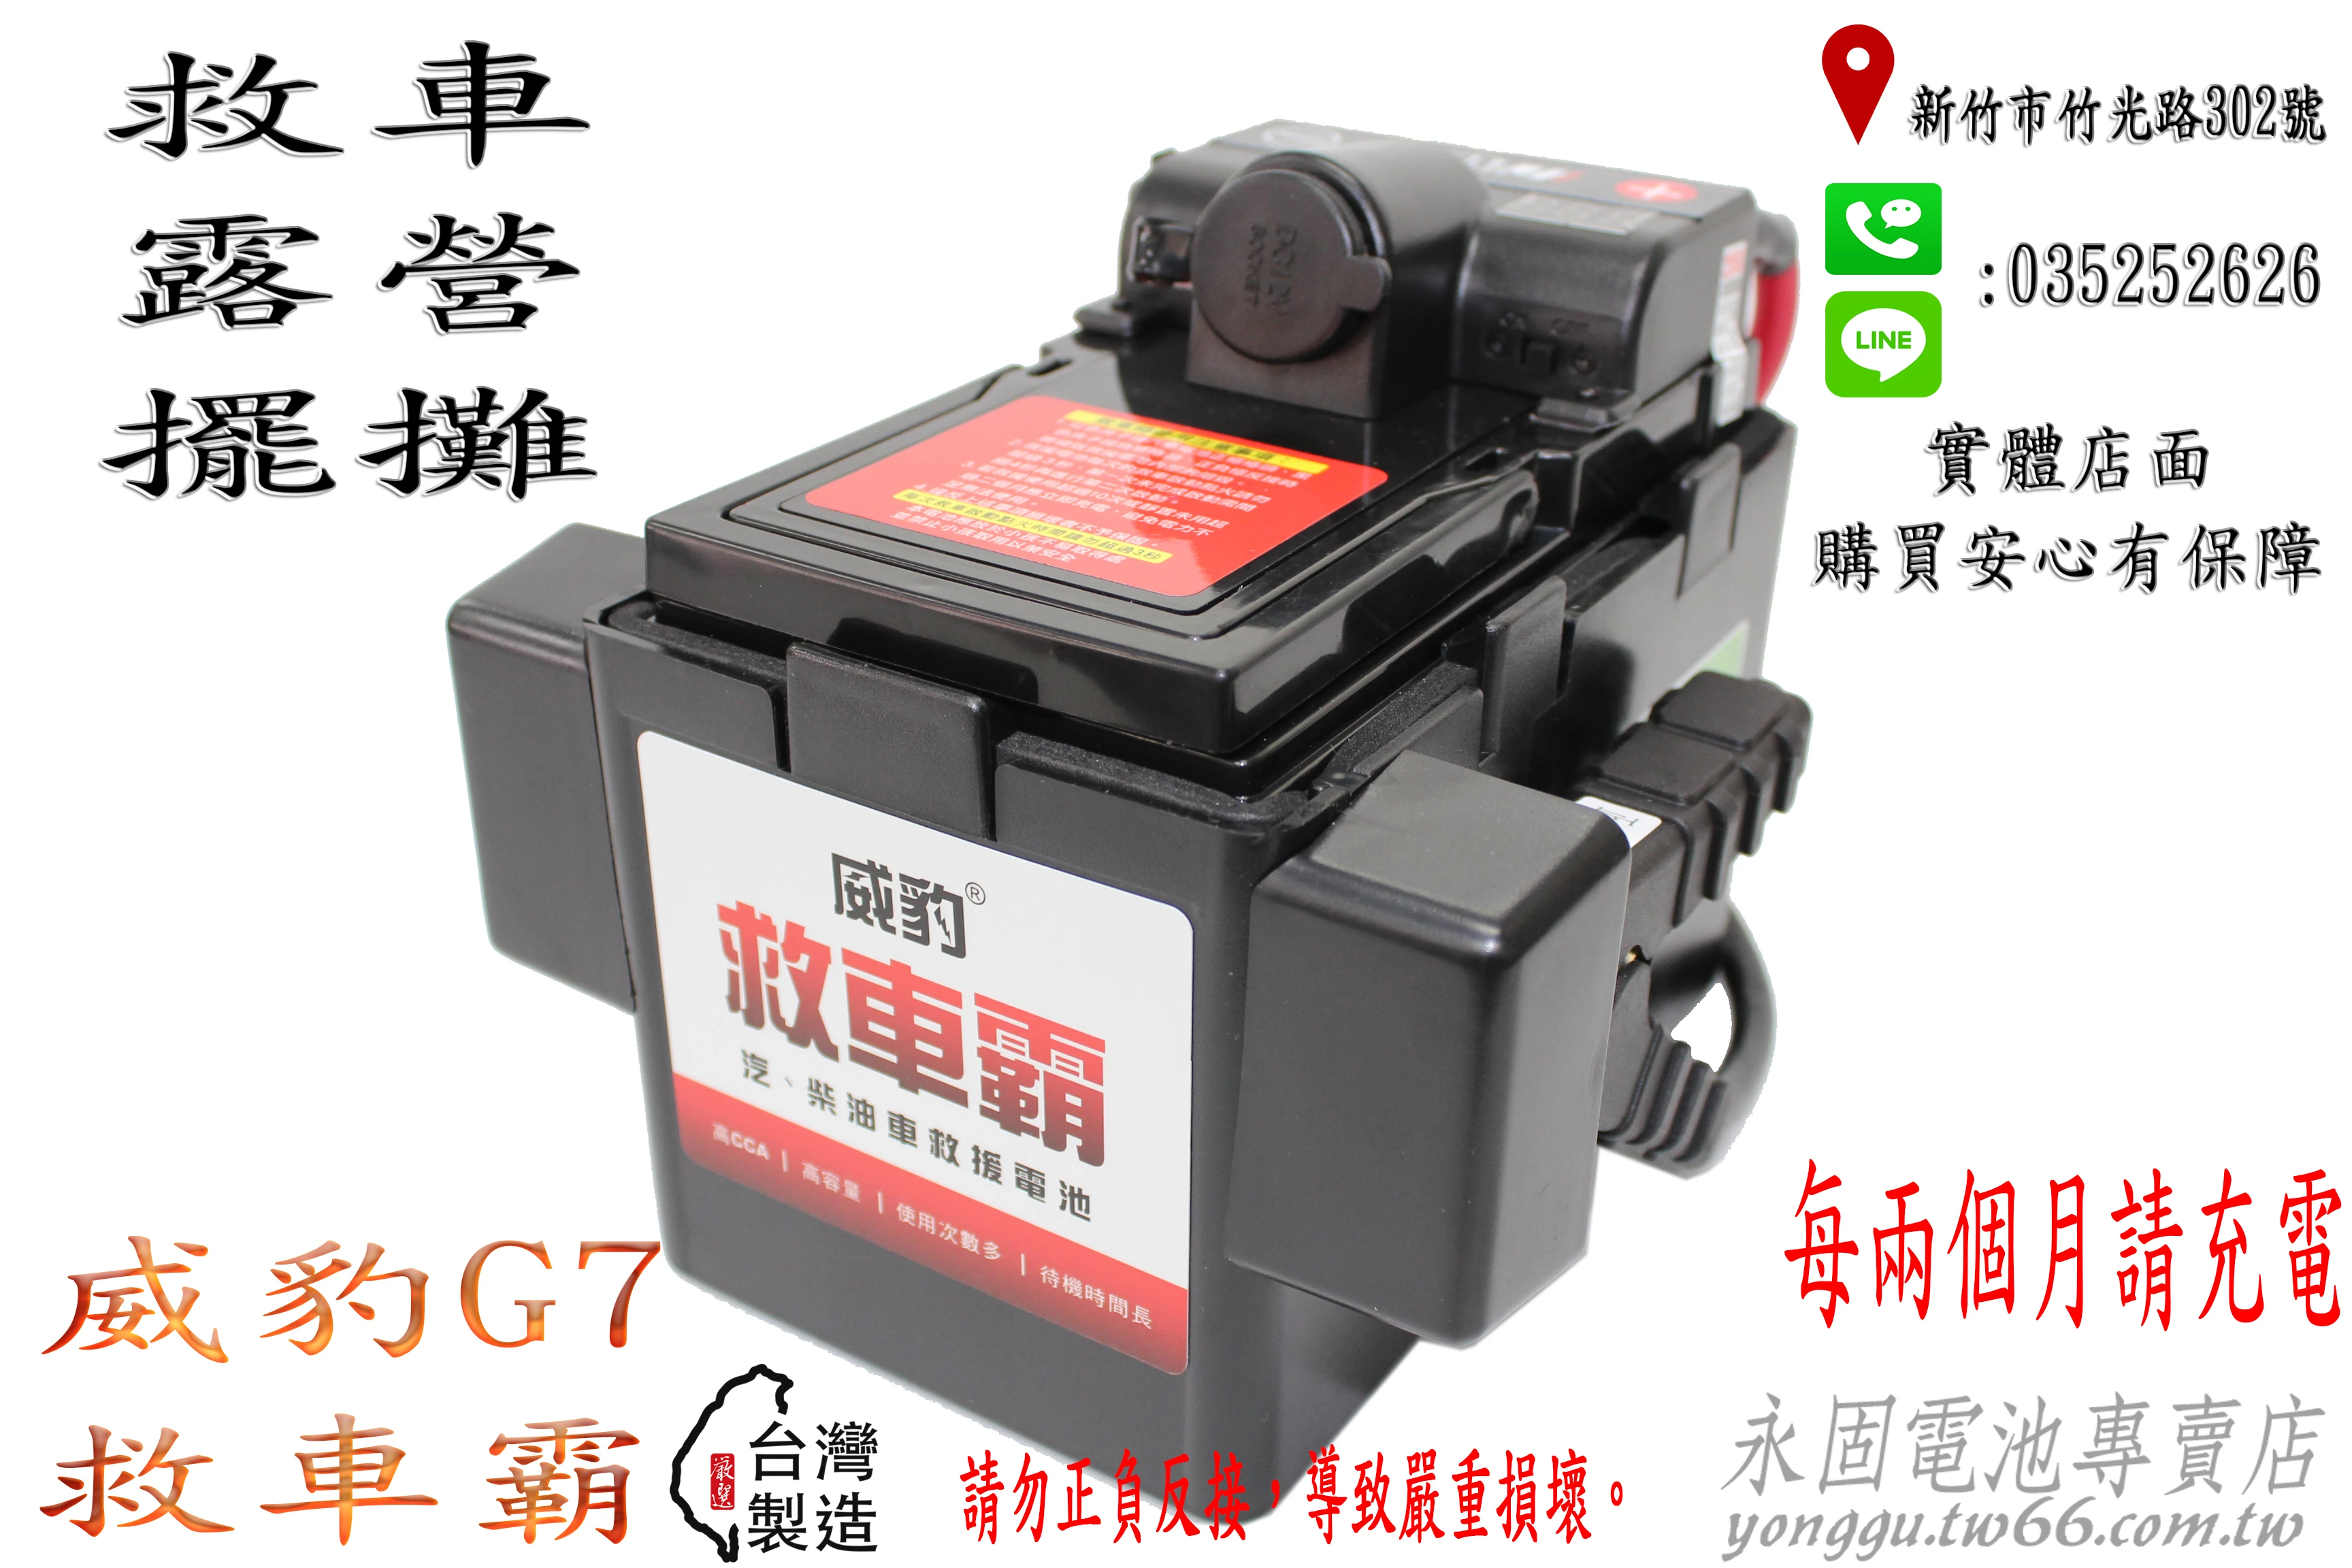 台灣製造 免運 威豹 G7 電壓表 救車 電霸 電匠 點菸座 USB 中型巴士 大卡車 以下輕易啟動 新竹永固電池專賣店